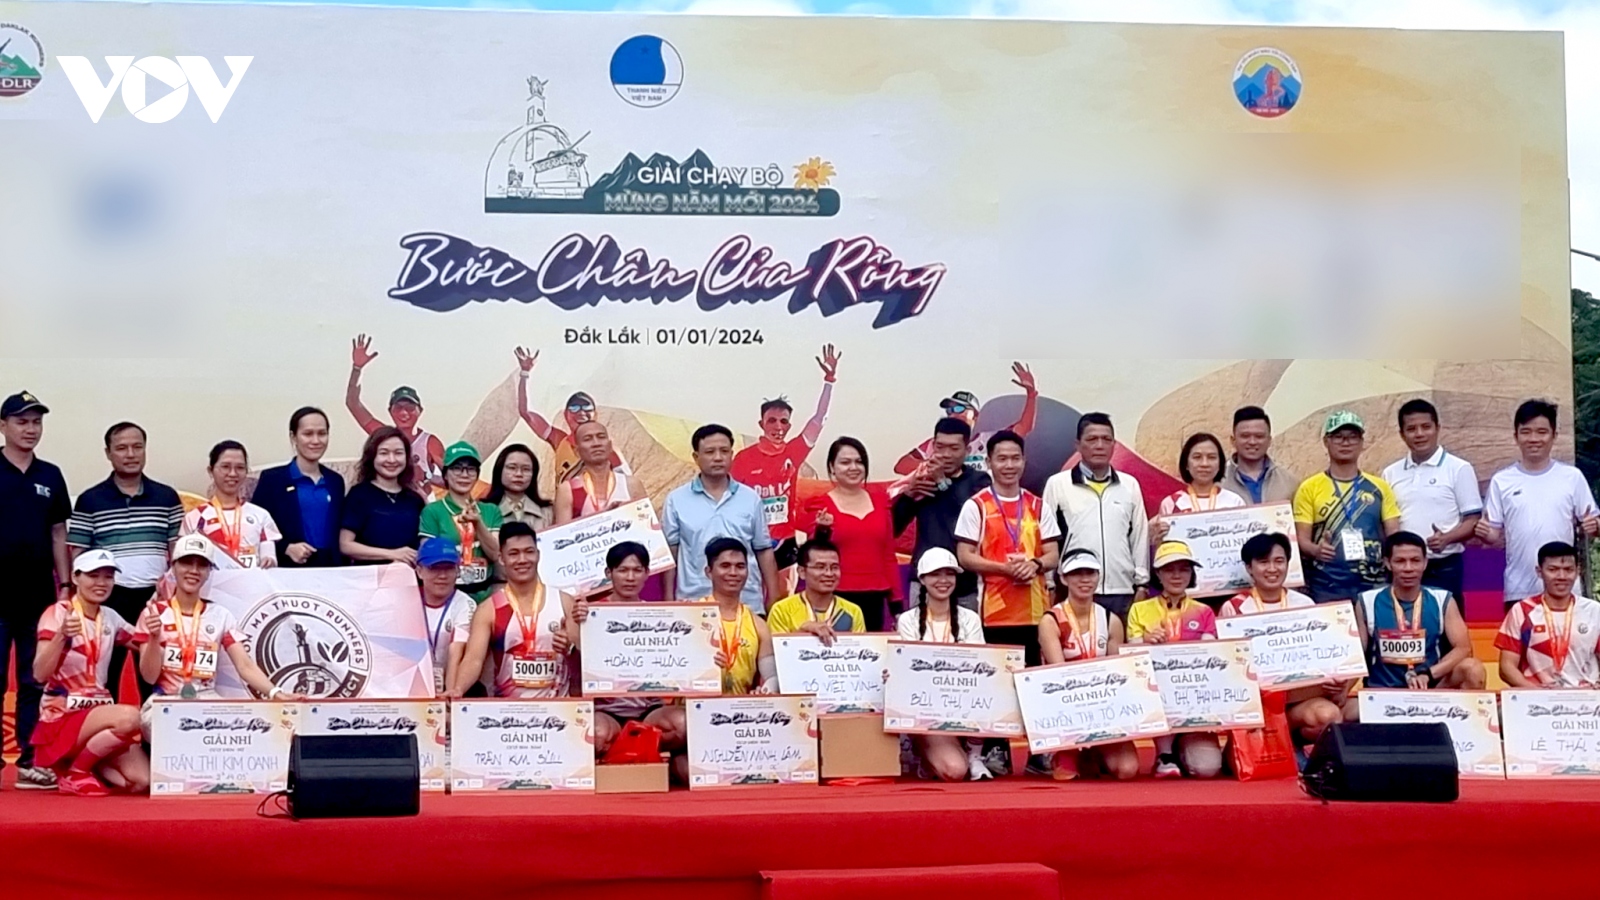 Giải chạy mừng năm mới 2024 tại Đắk Lắk